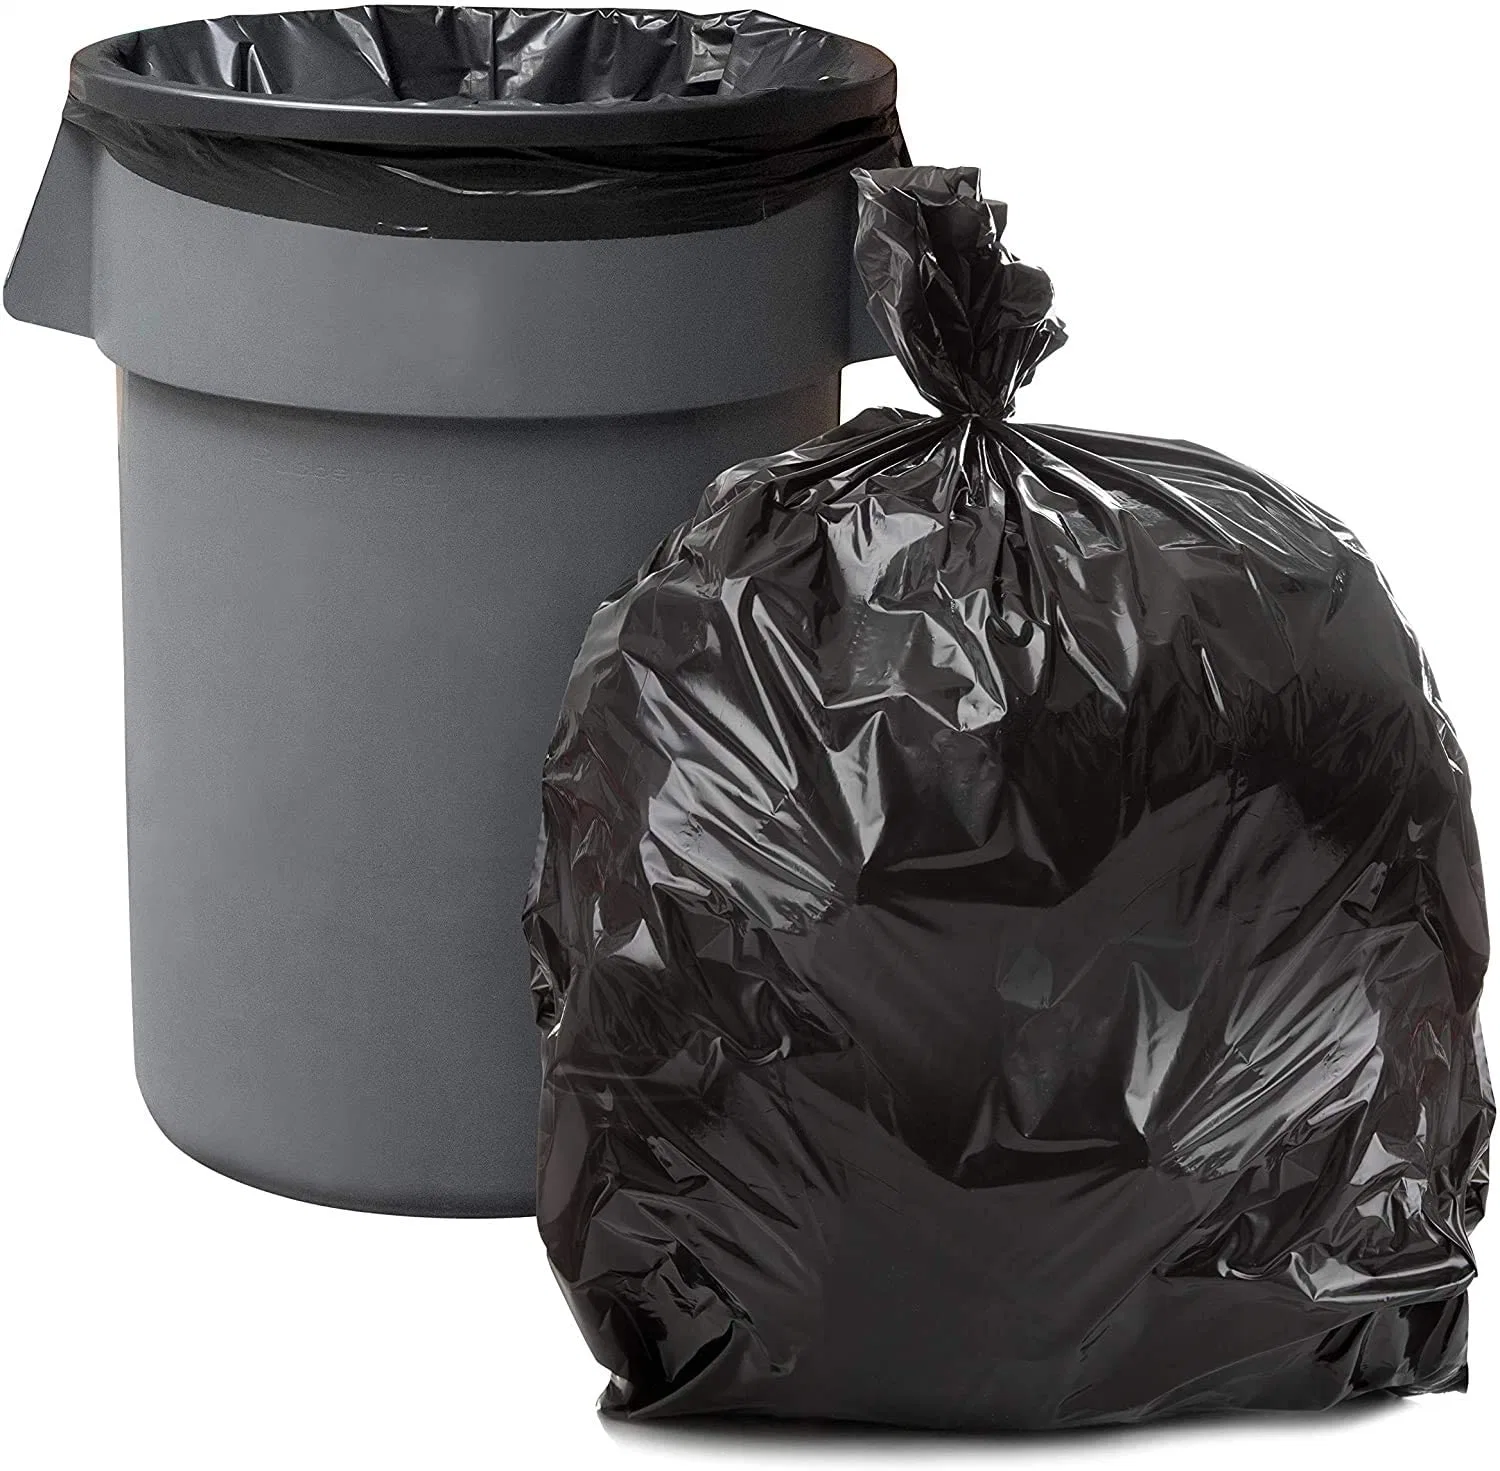 PE virgen de plástico de color negro de gran tamaño extra fuerte mano de embalaje Jardín portador de la basura basura basura de la bolsa de embalaje